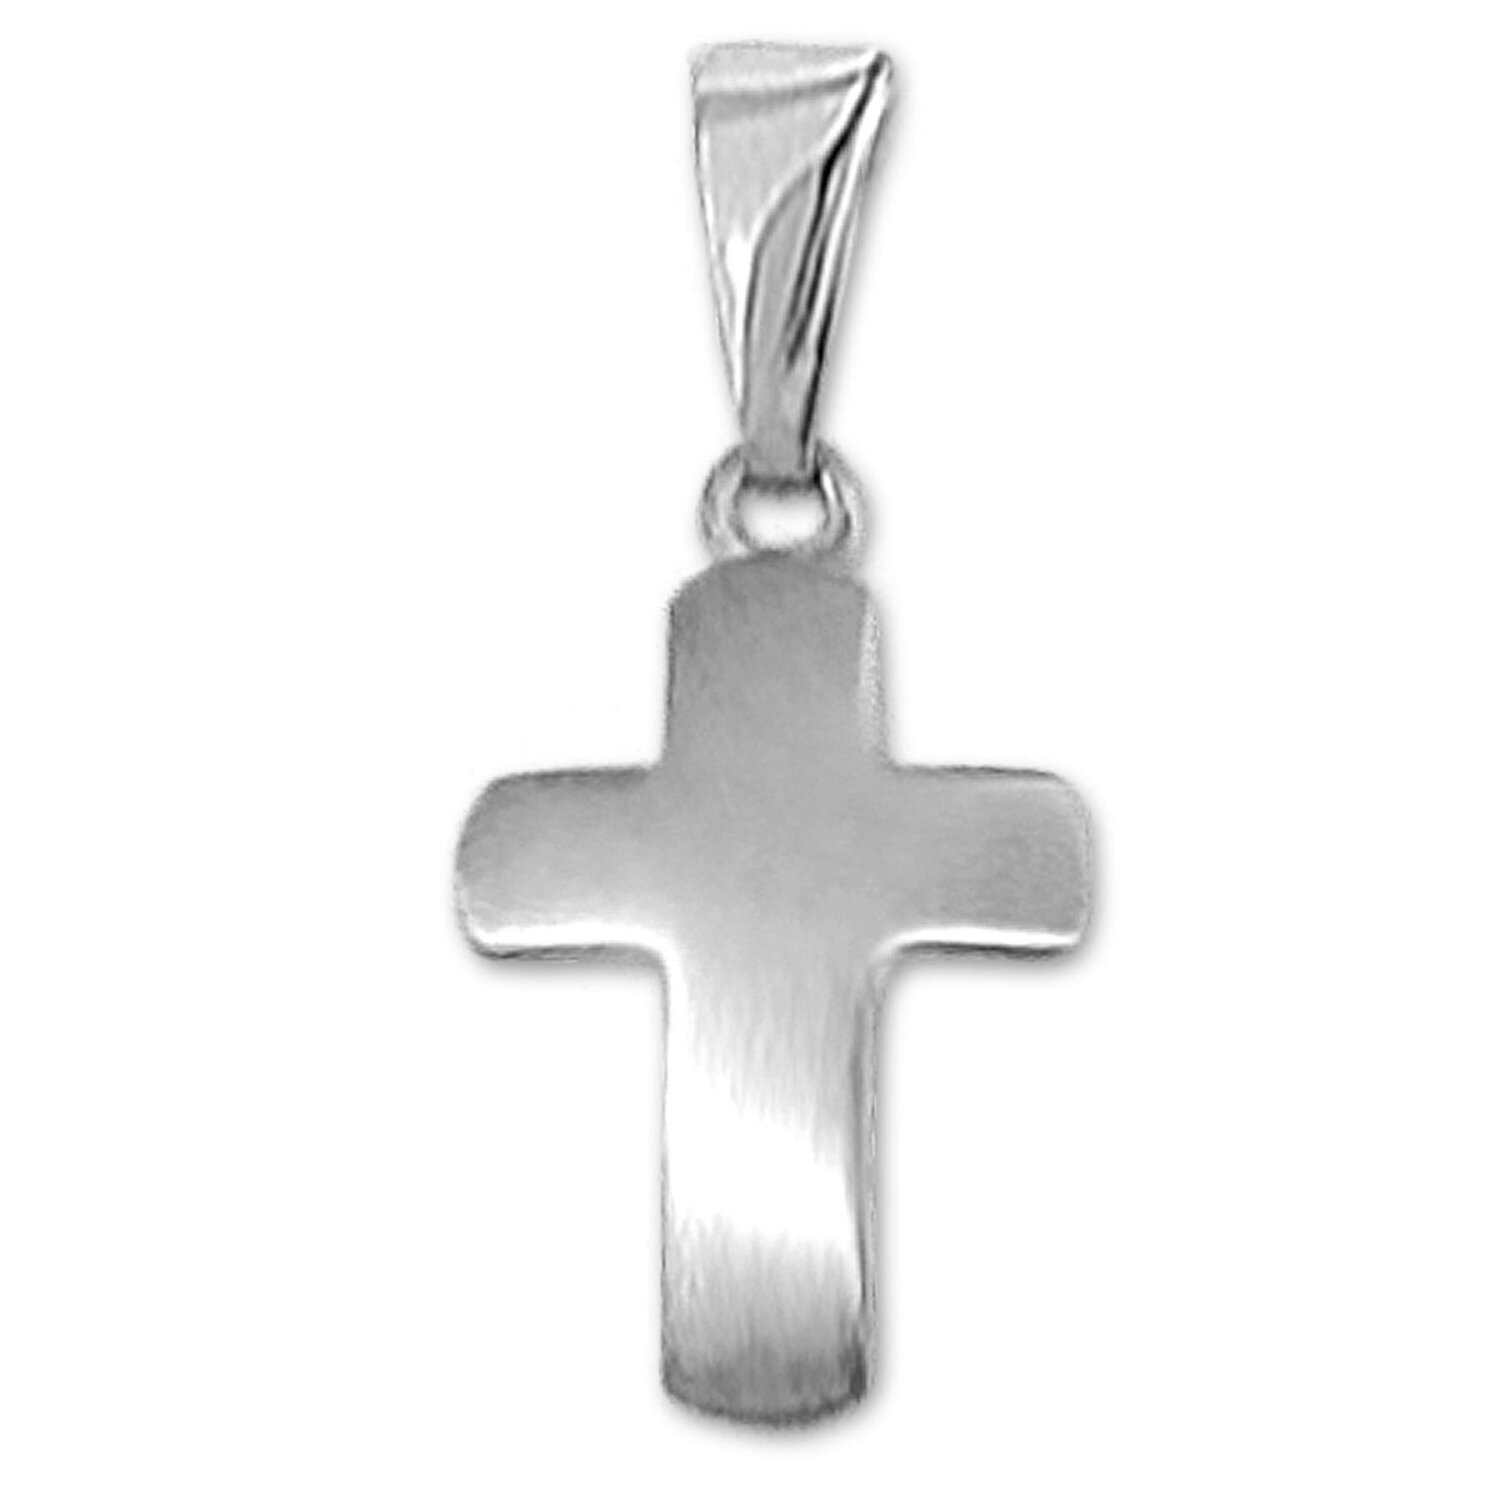 Silbernes schlichtes Kreuz 12 mm seidenmatt leicht gewölbt Echt Silber 925 rhodiniert